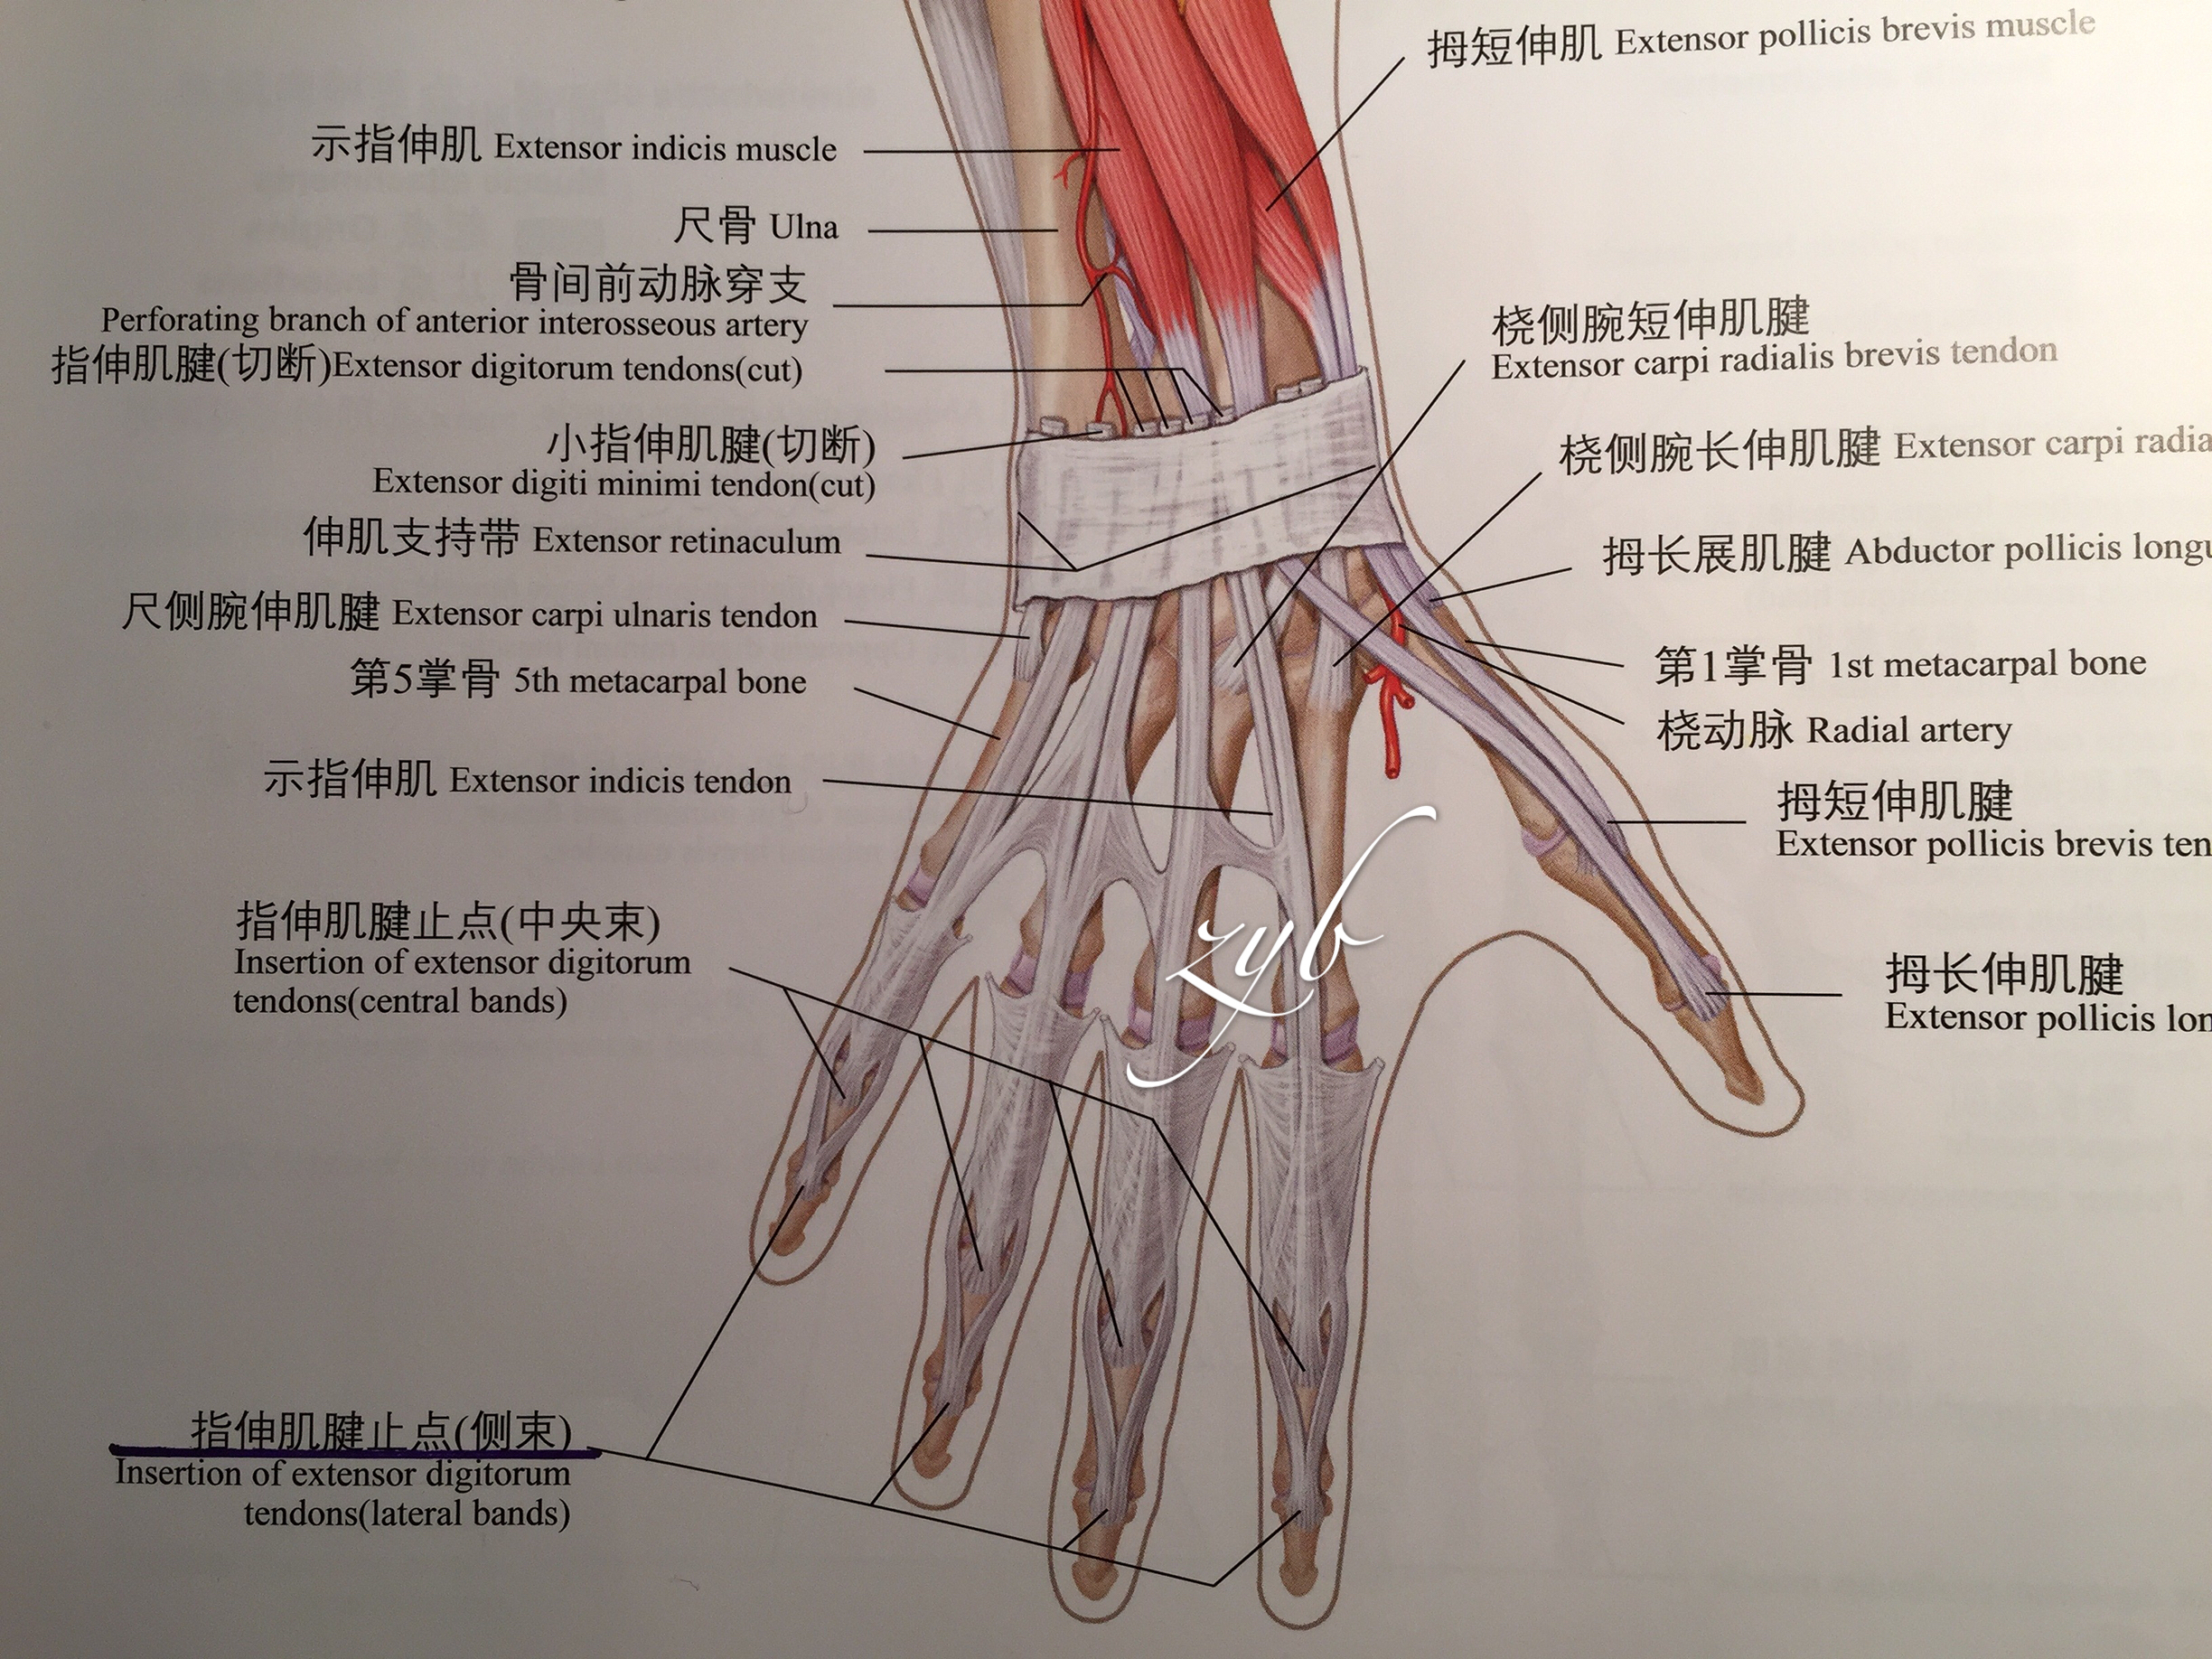 锤状指:手指背侧伸肌腱(侧束)远端止点断裂,远节指间关节背伸障碍